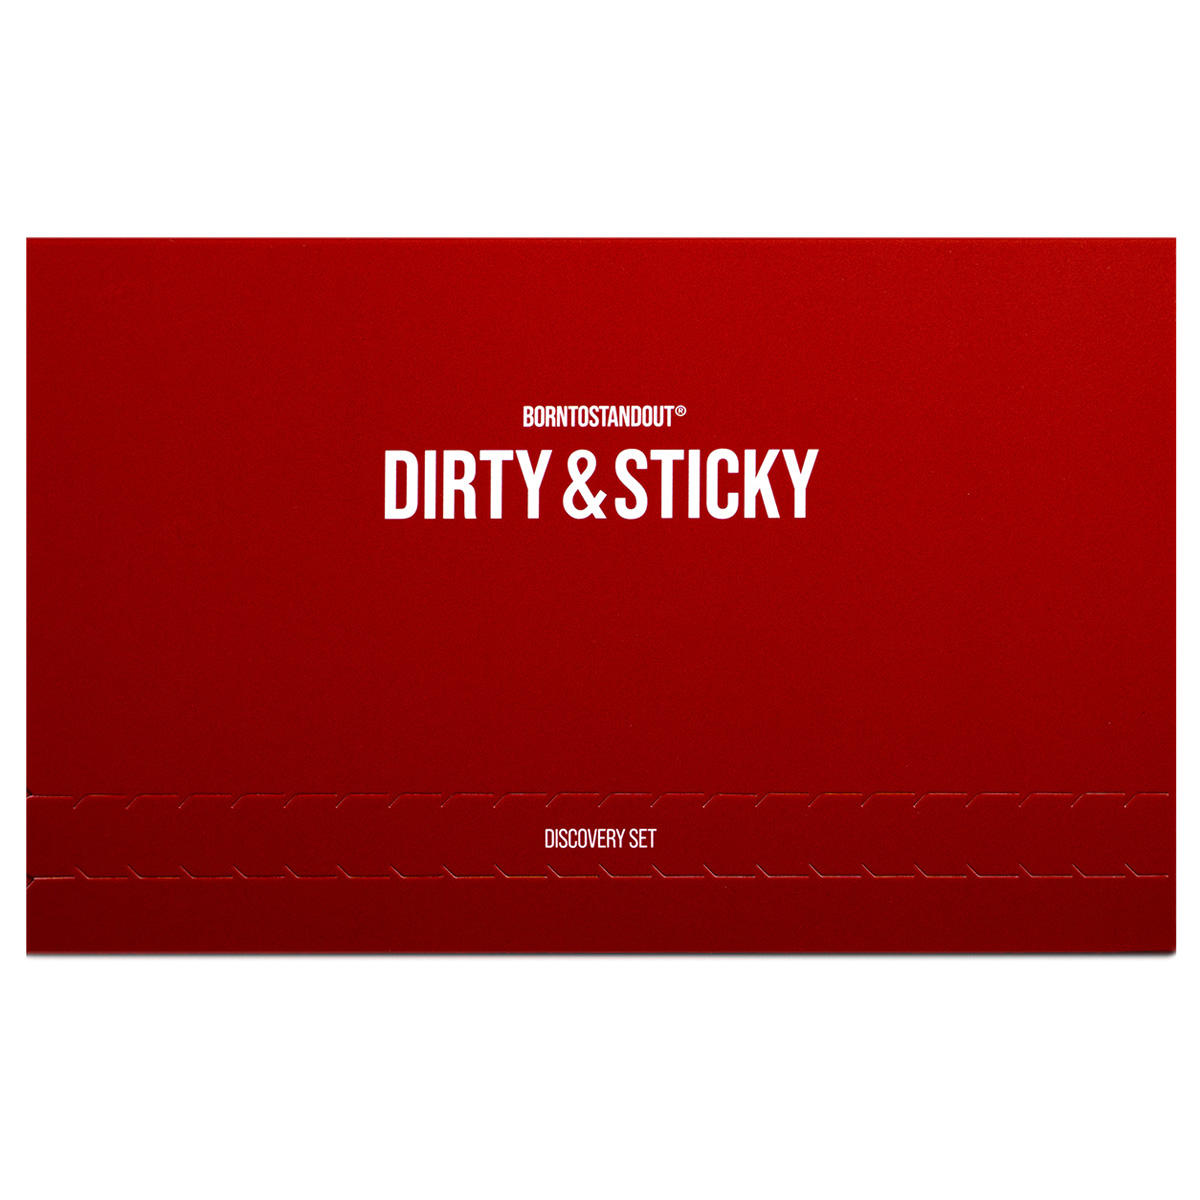 BORNTOSTANDOUT Dirty & Sticky Discovery Set 8 x 2 ml - 1